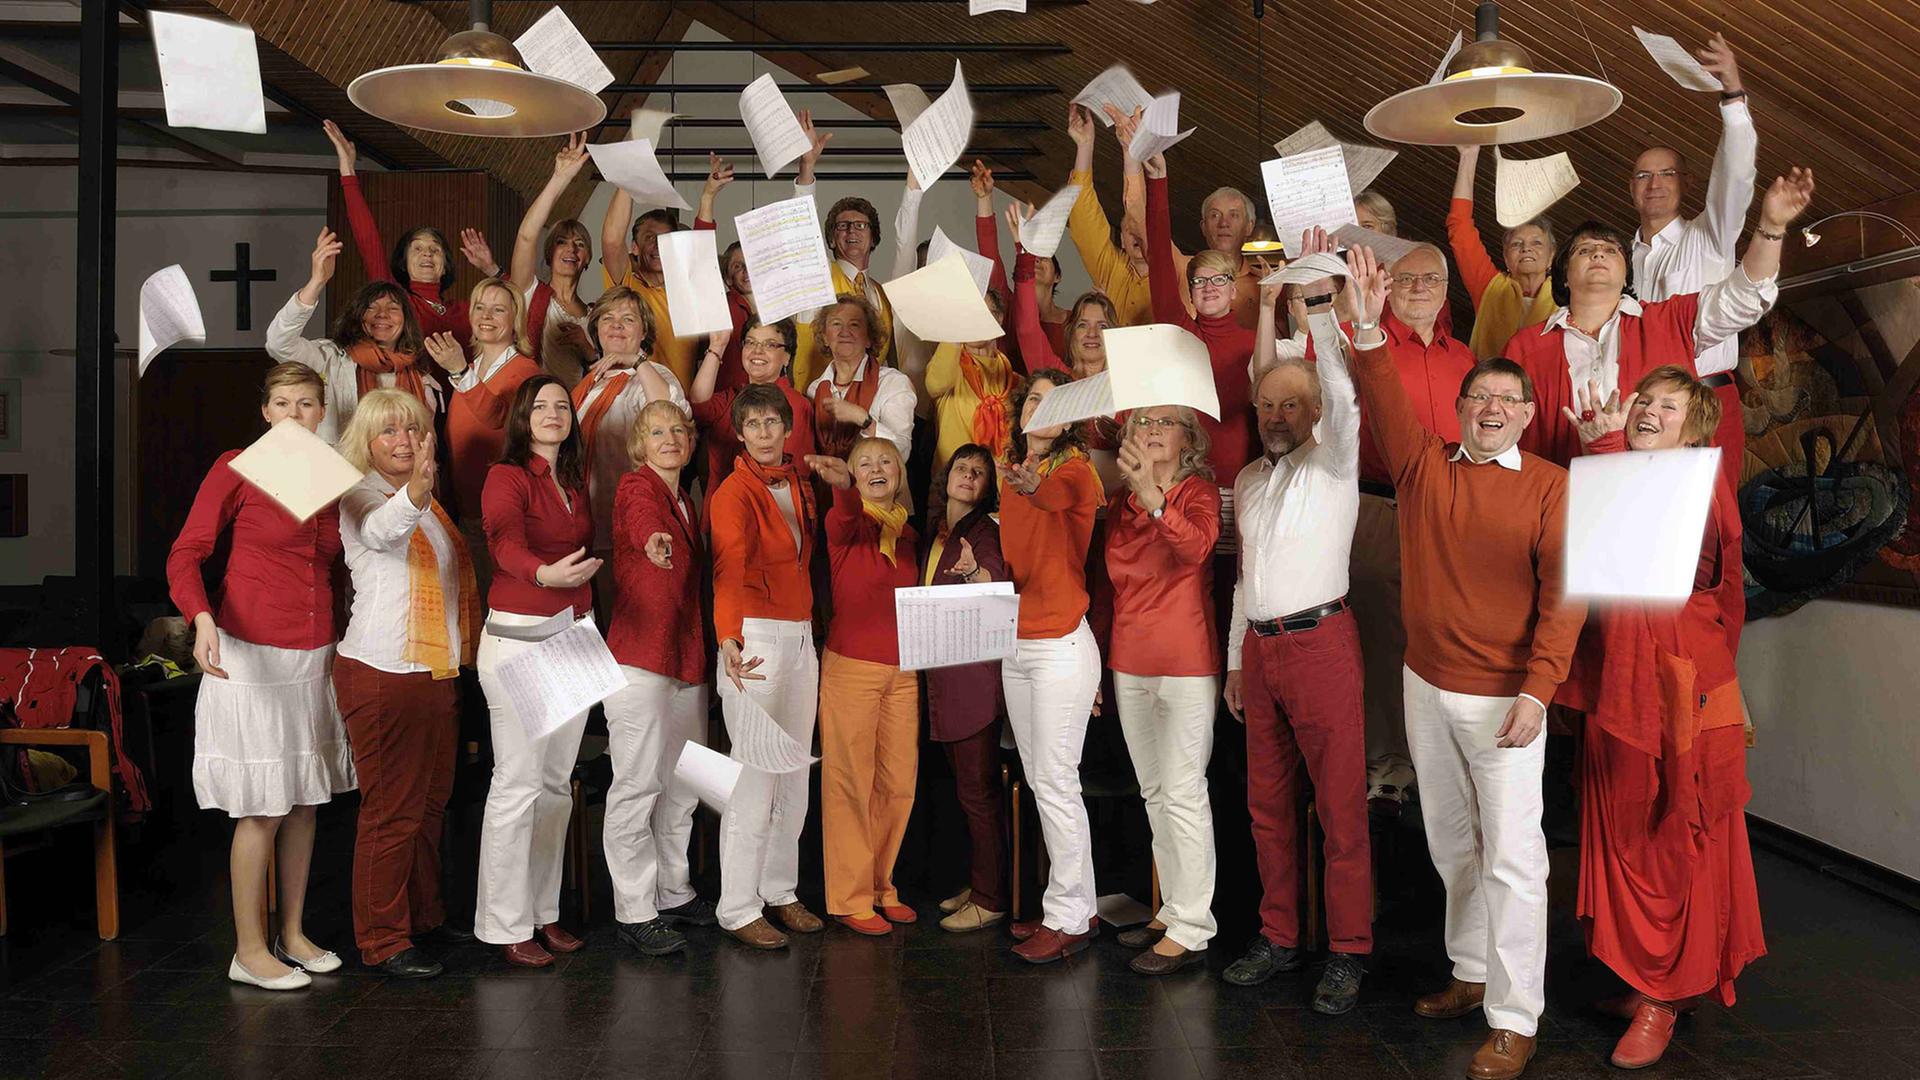 Gruppenfoto des Chors Lampenfieber aus Bergisch-Gladbach. Die Sängerinnen und Sänger werfen Notenblätter in die Luft.